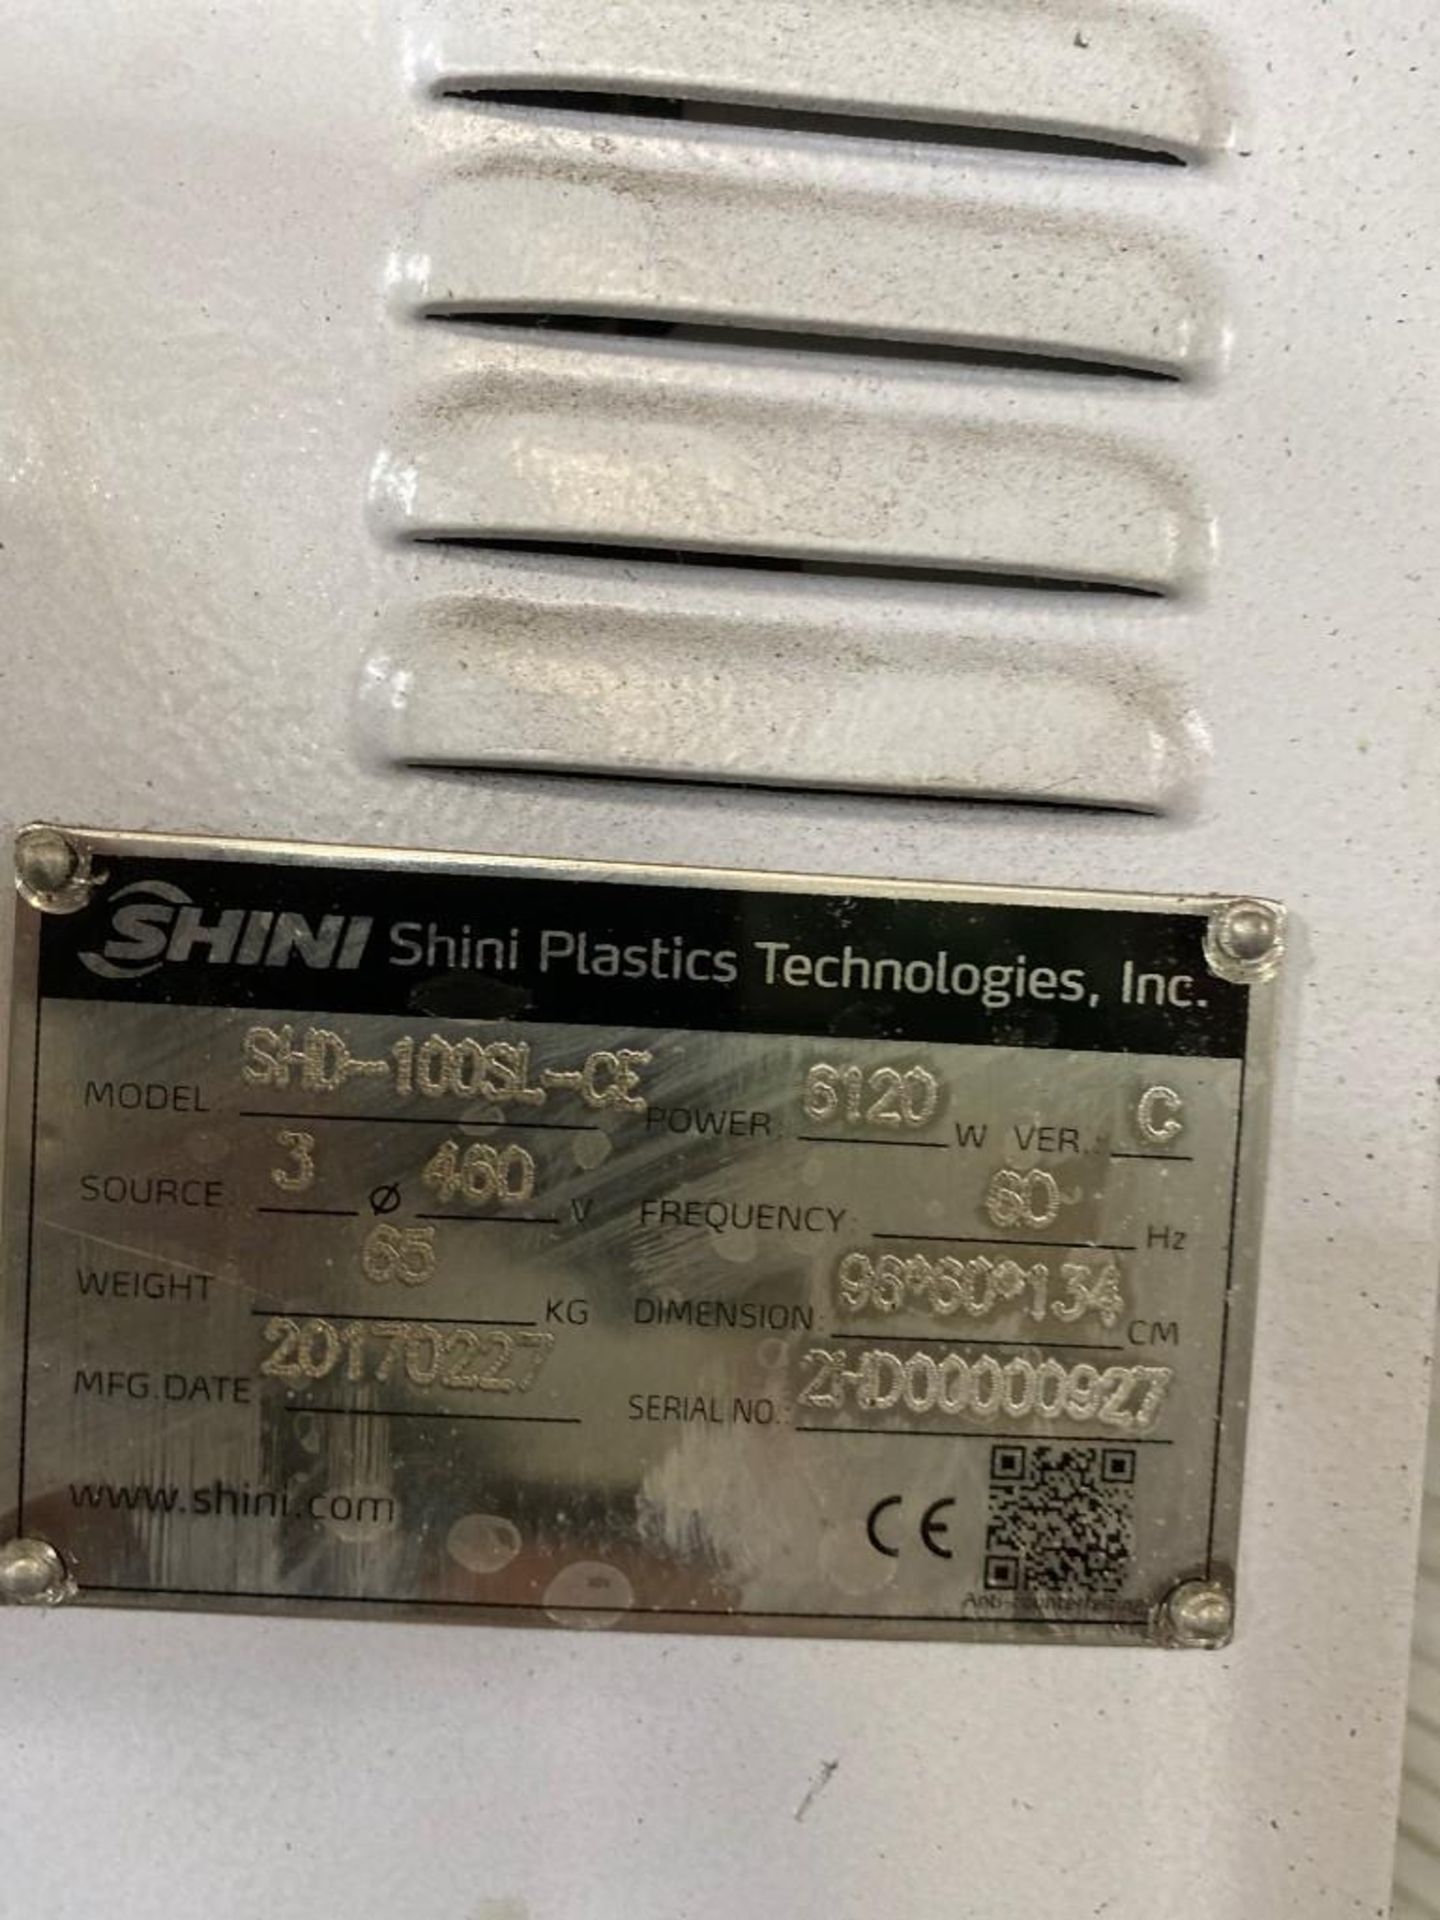 Shini SHD-100SL-CE Hopper Dryer, s/n 2HD00000927, New 2017 - Image 3 of 4